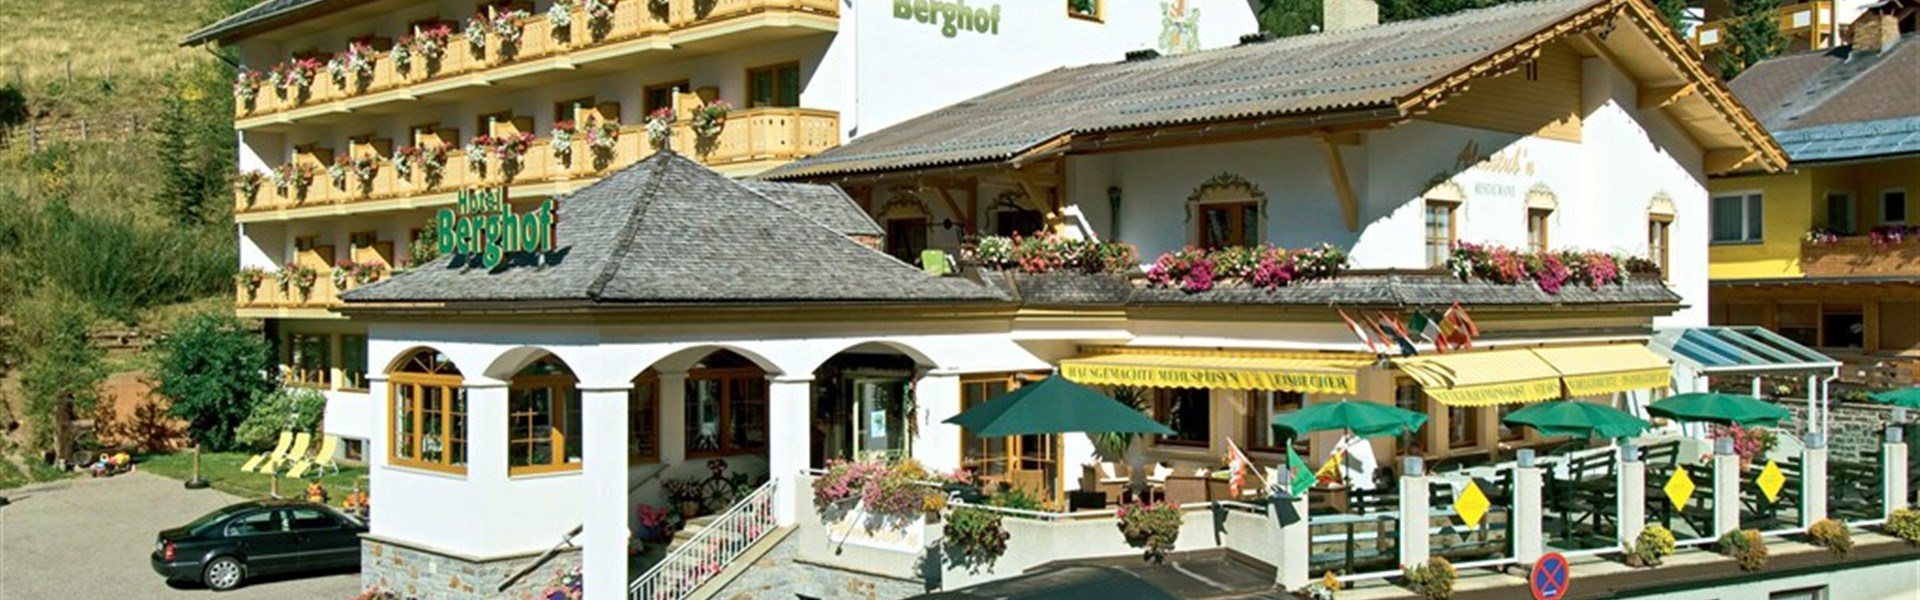 Familienhotel Berghof (S) - 